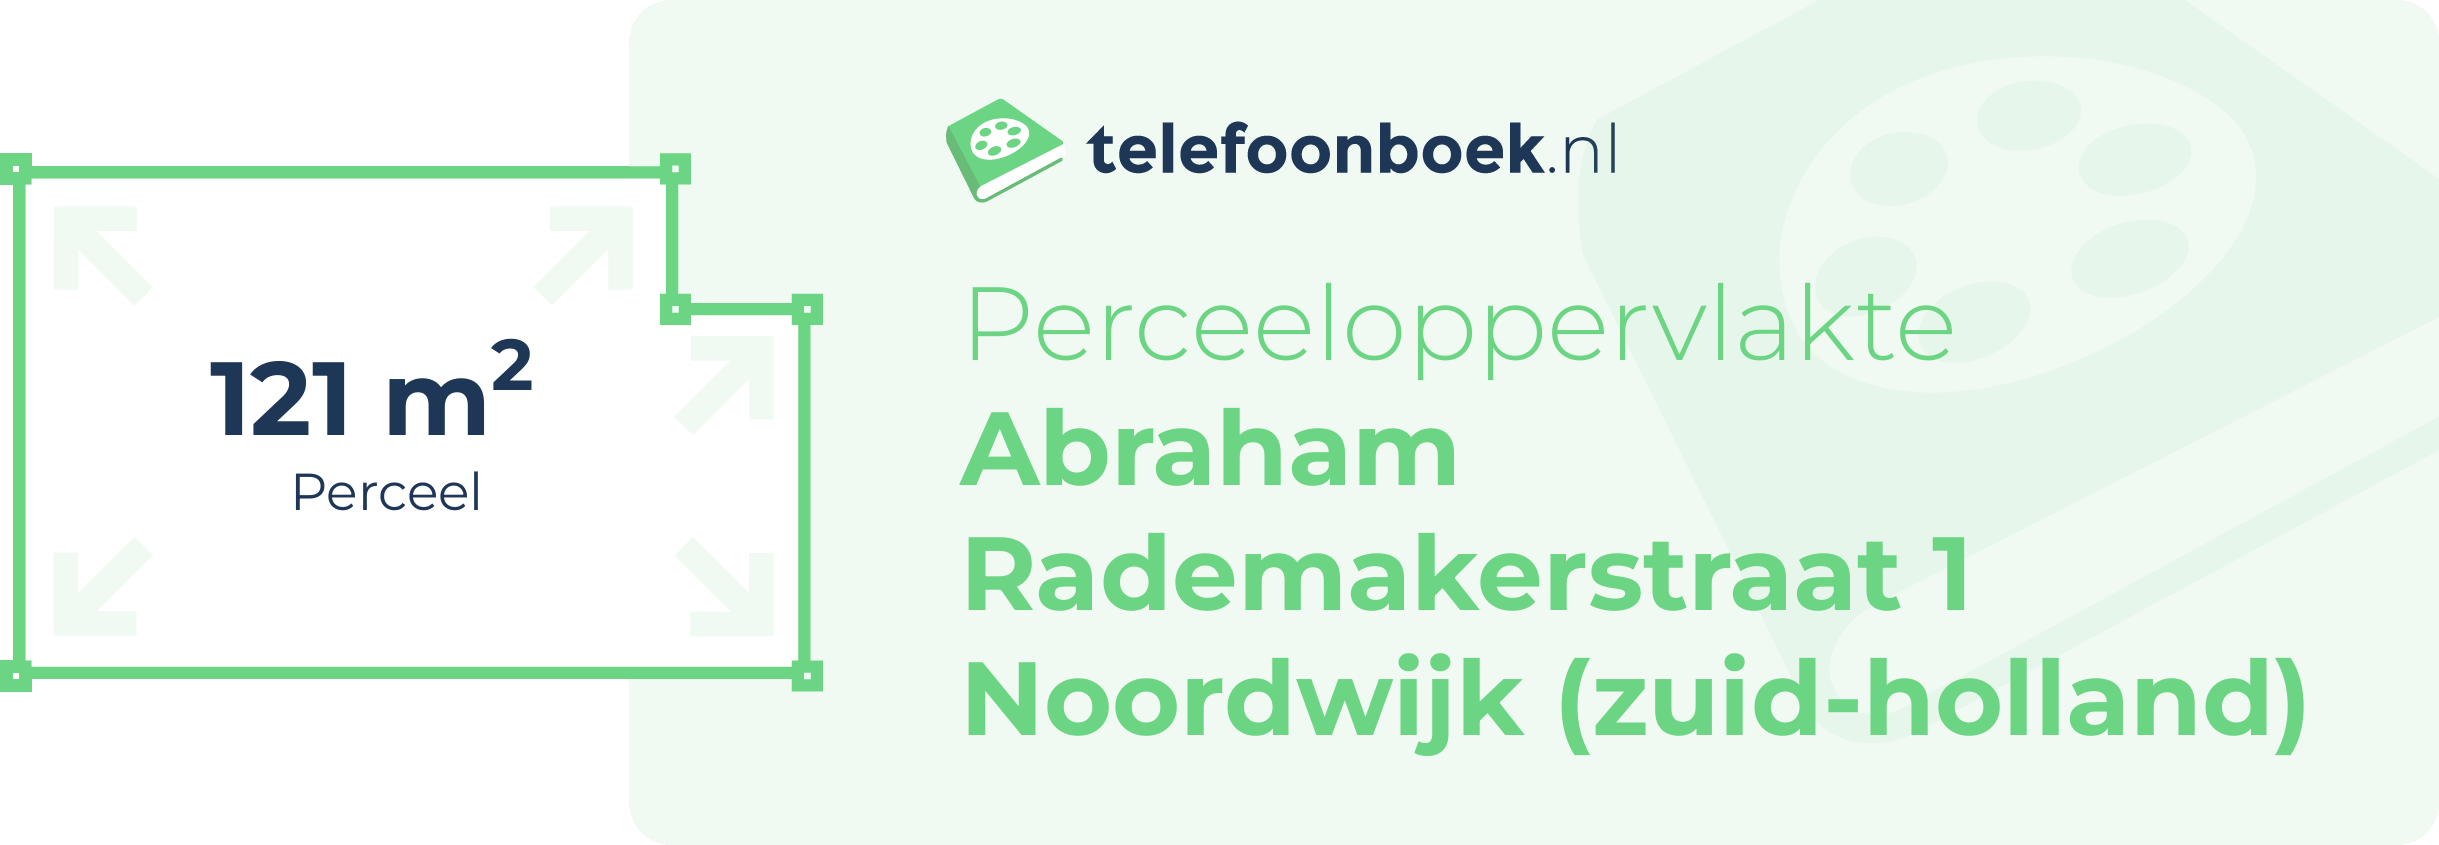 Perceeloppervlakte Abraham Rademakerstraat 1 Noordwijk (Zuid-Holland)